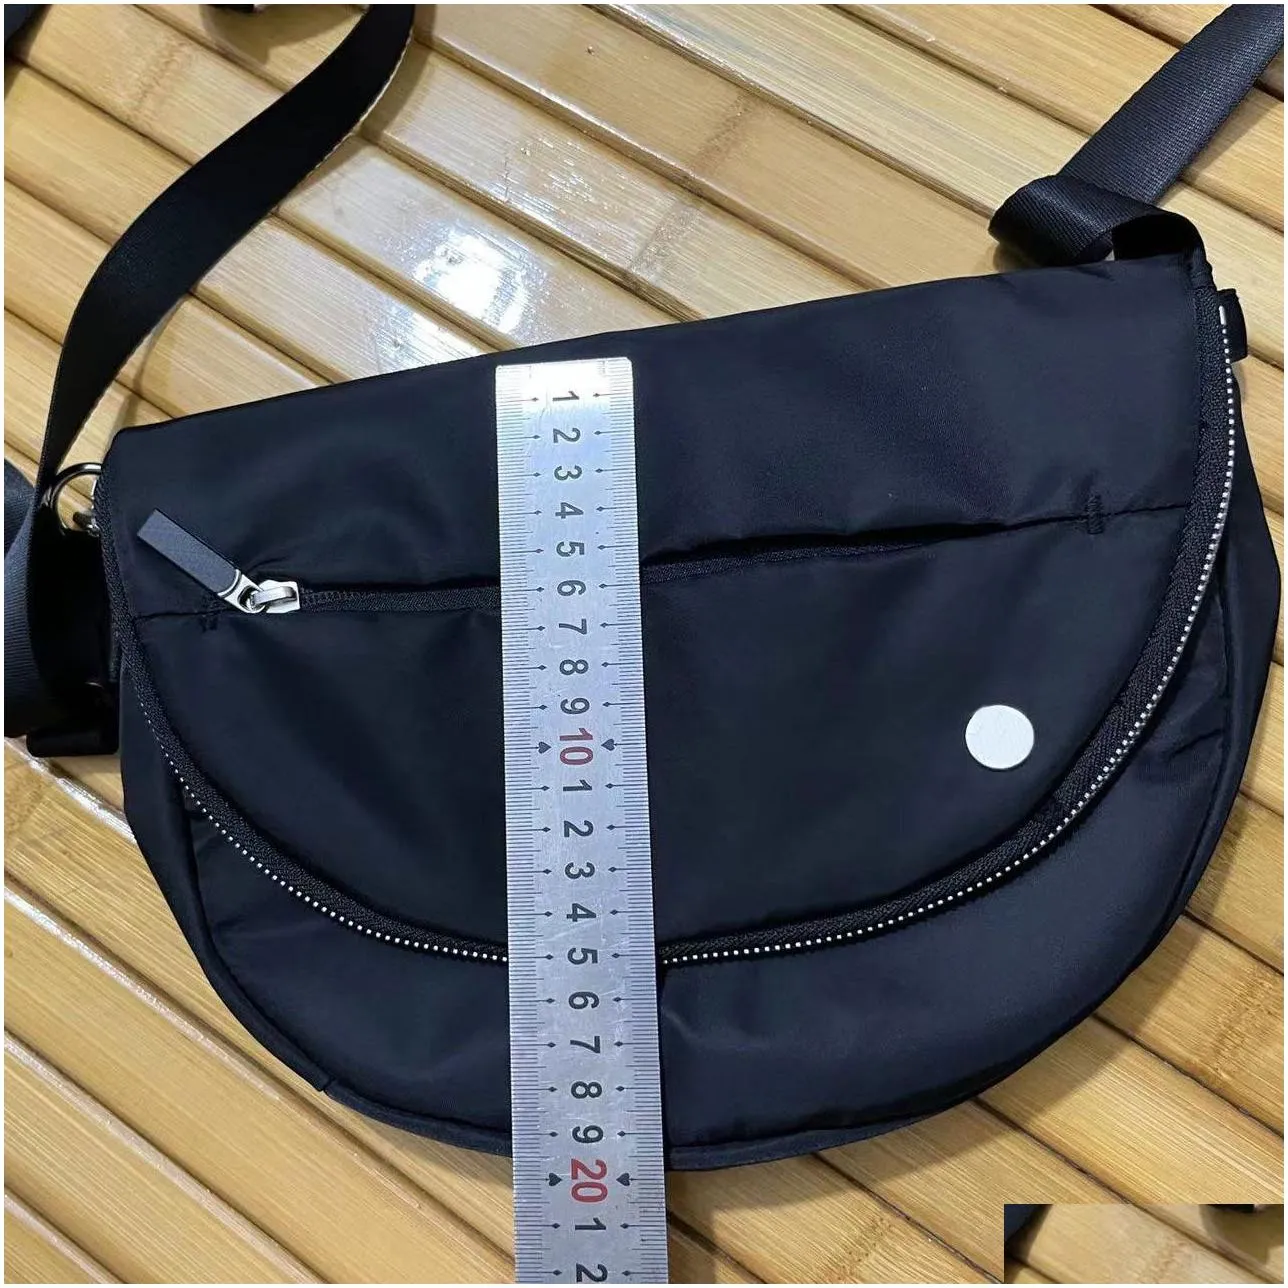 festival bag 5l/2l messenger bags wide opening crossbody bag have adjustable strap water-repellent micro shoulder bag